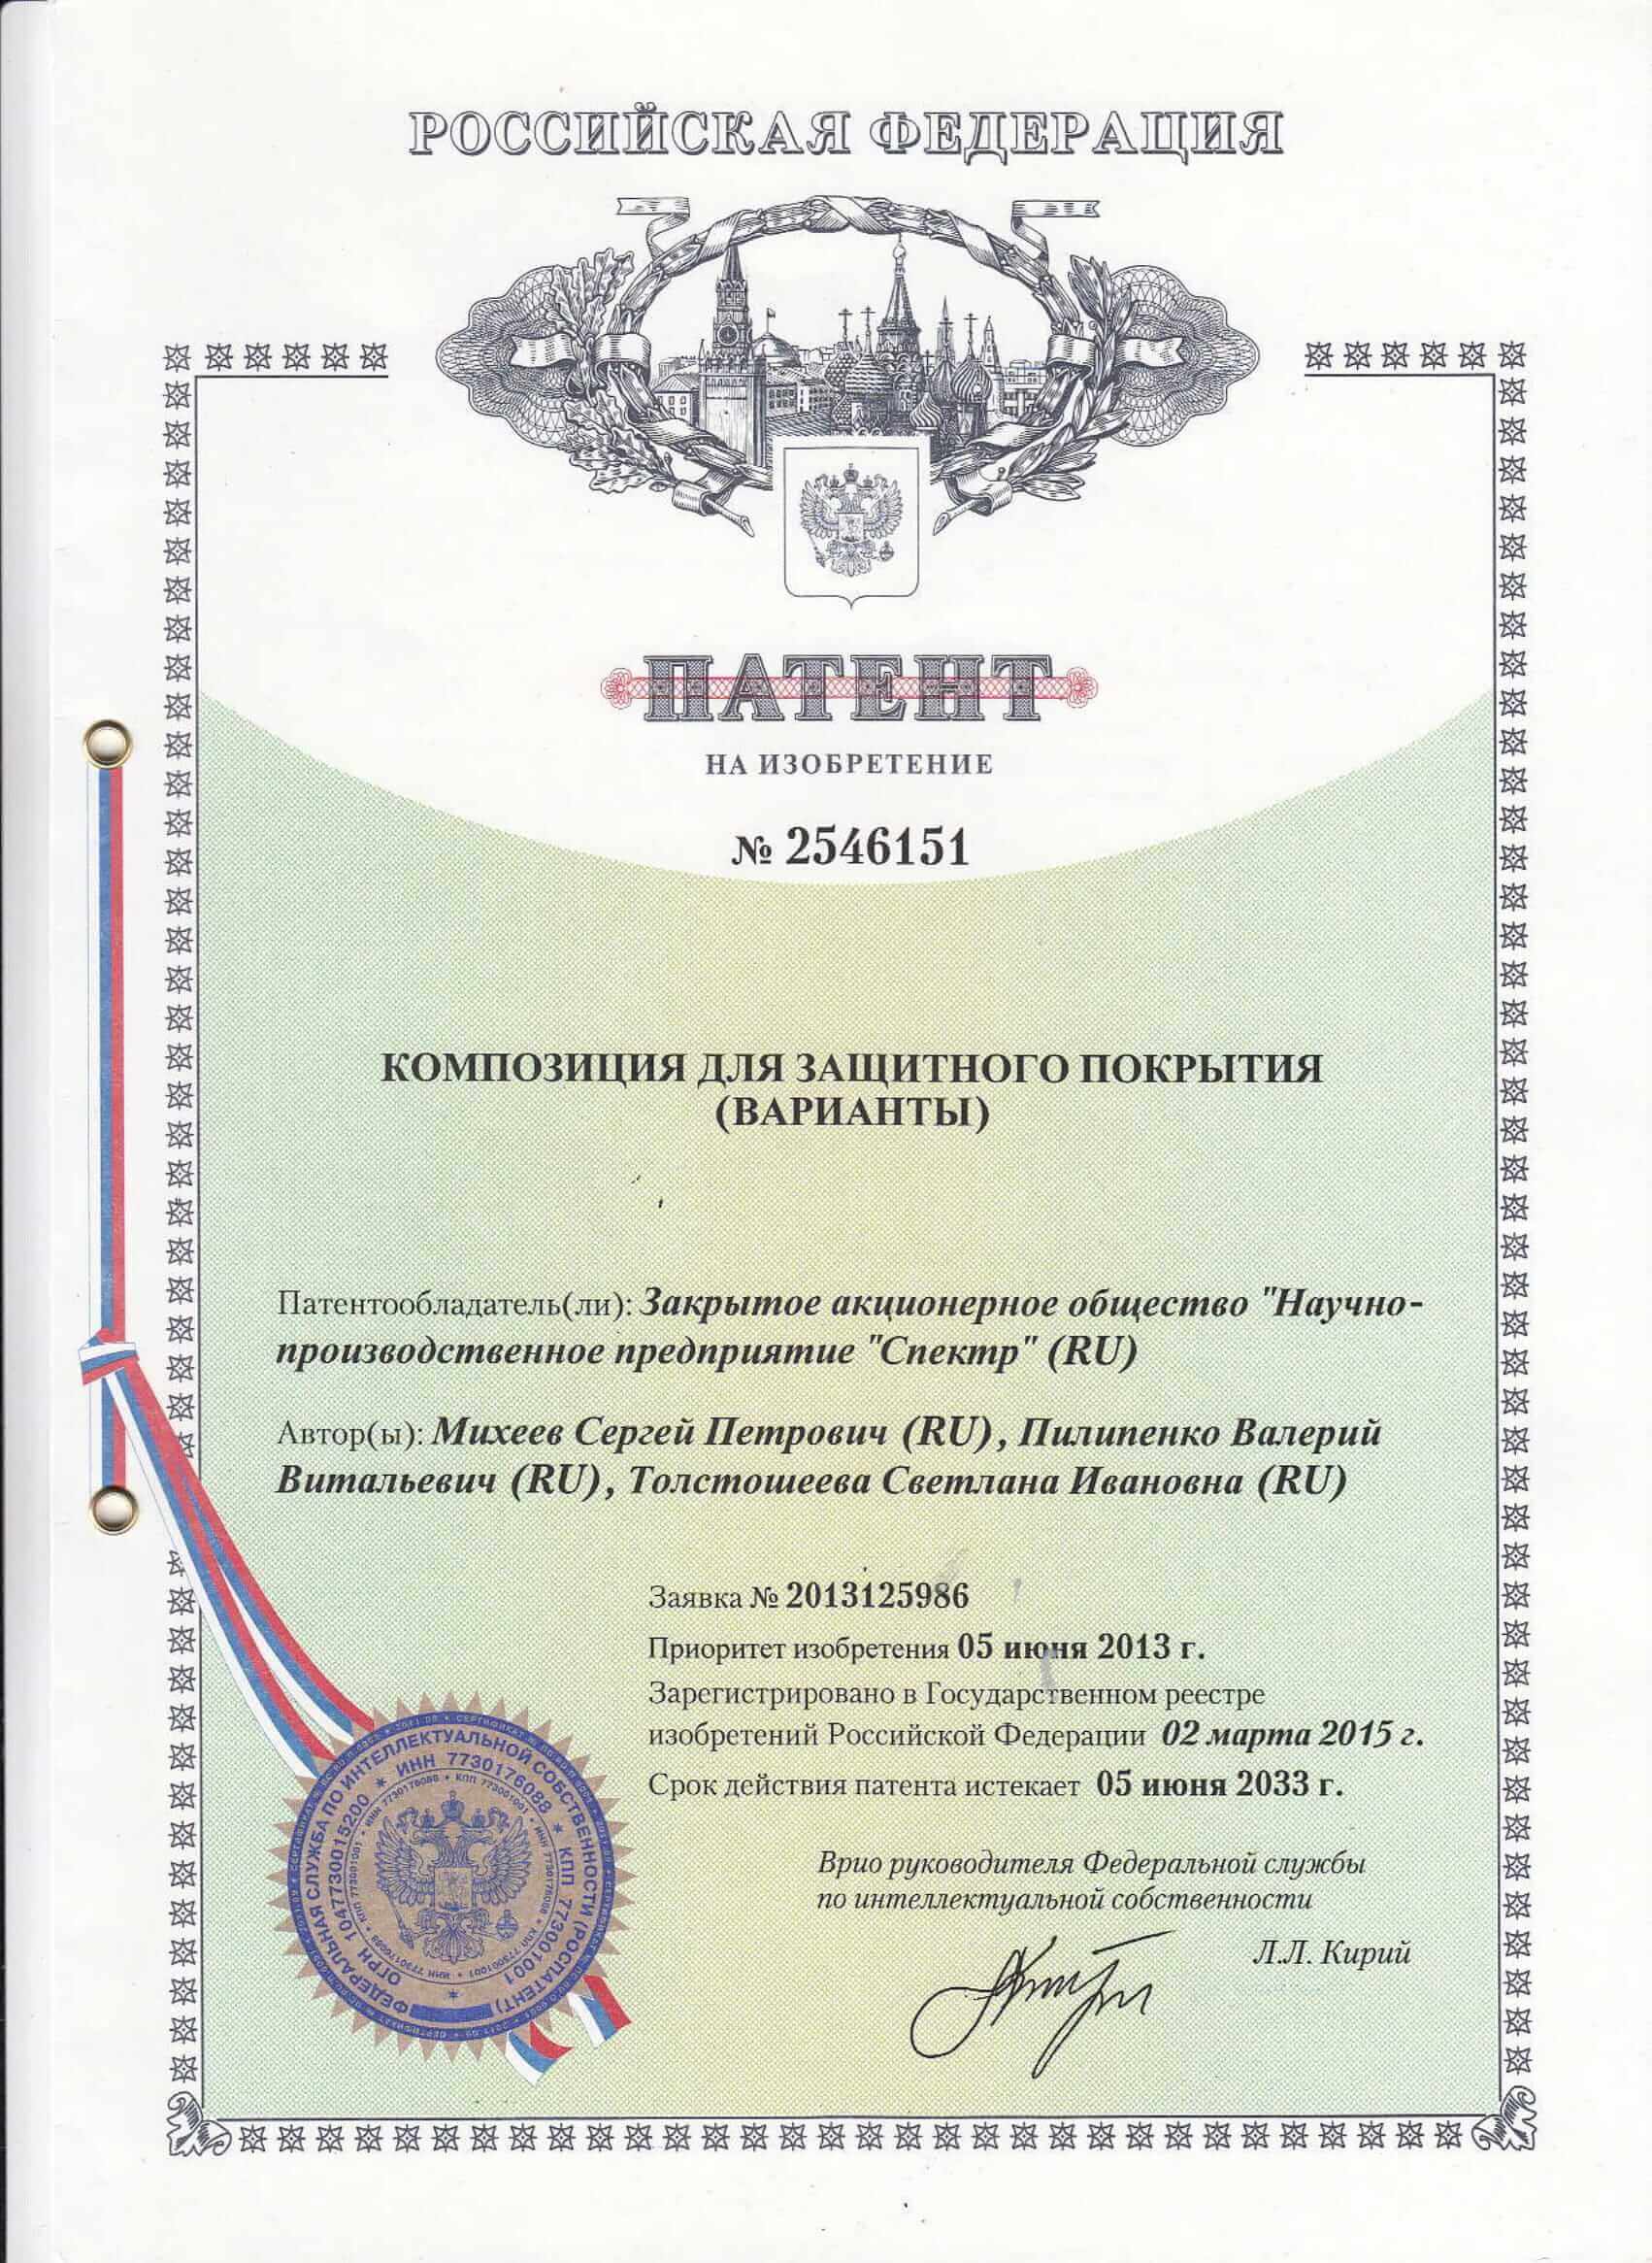 Патент на изобретение № 2546151 Композиция для защитного покрытия (варианты)